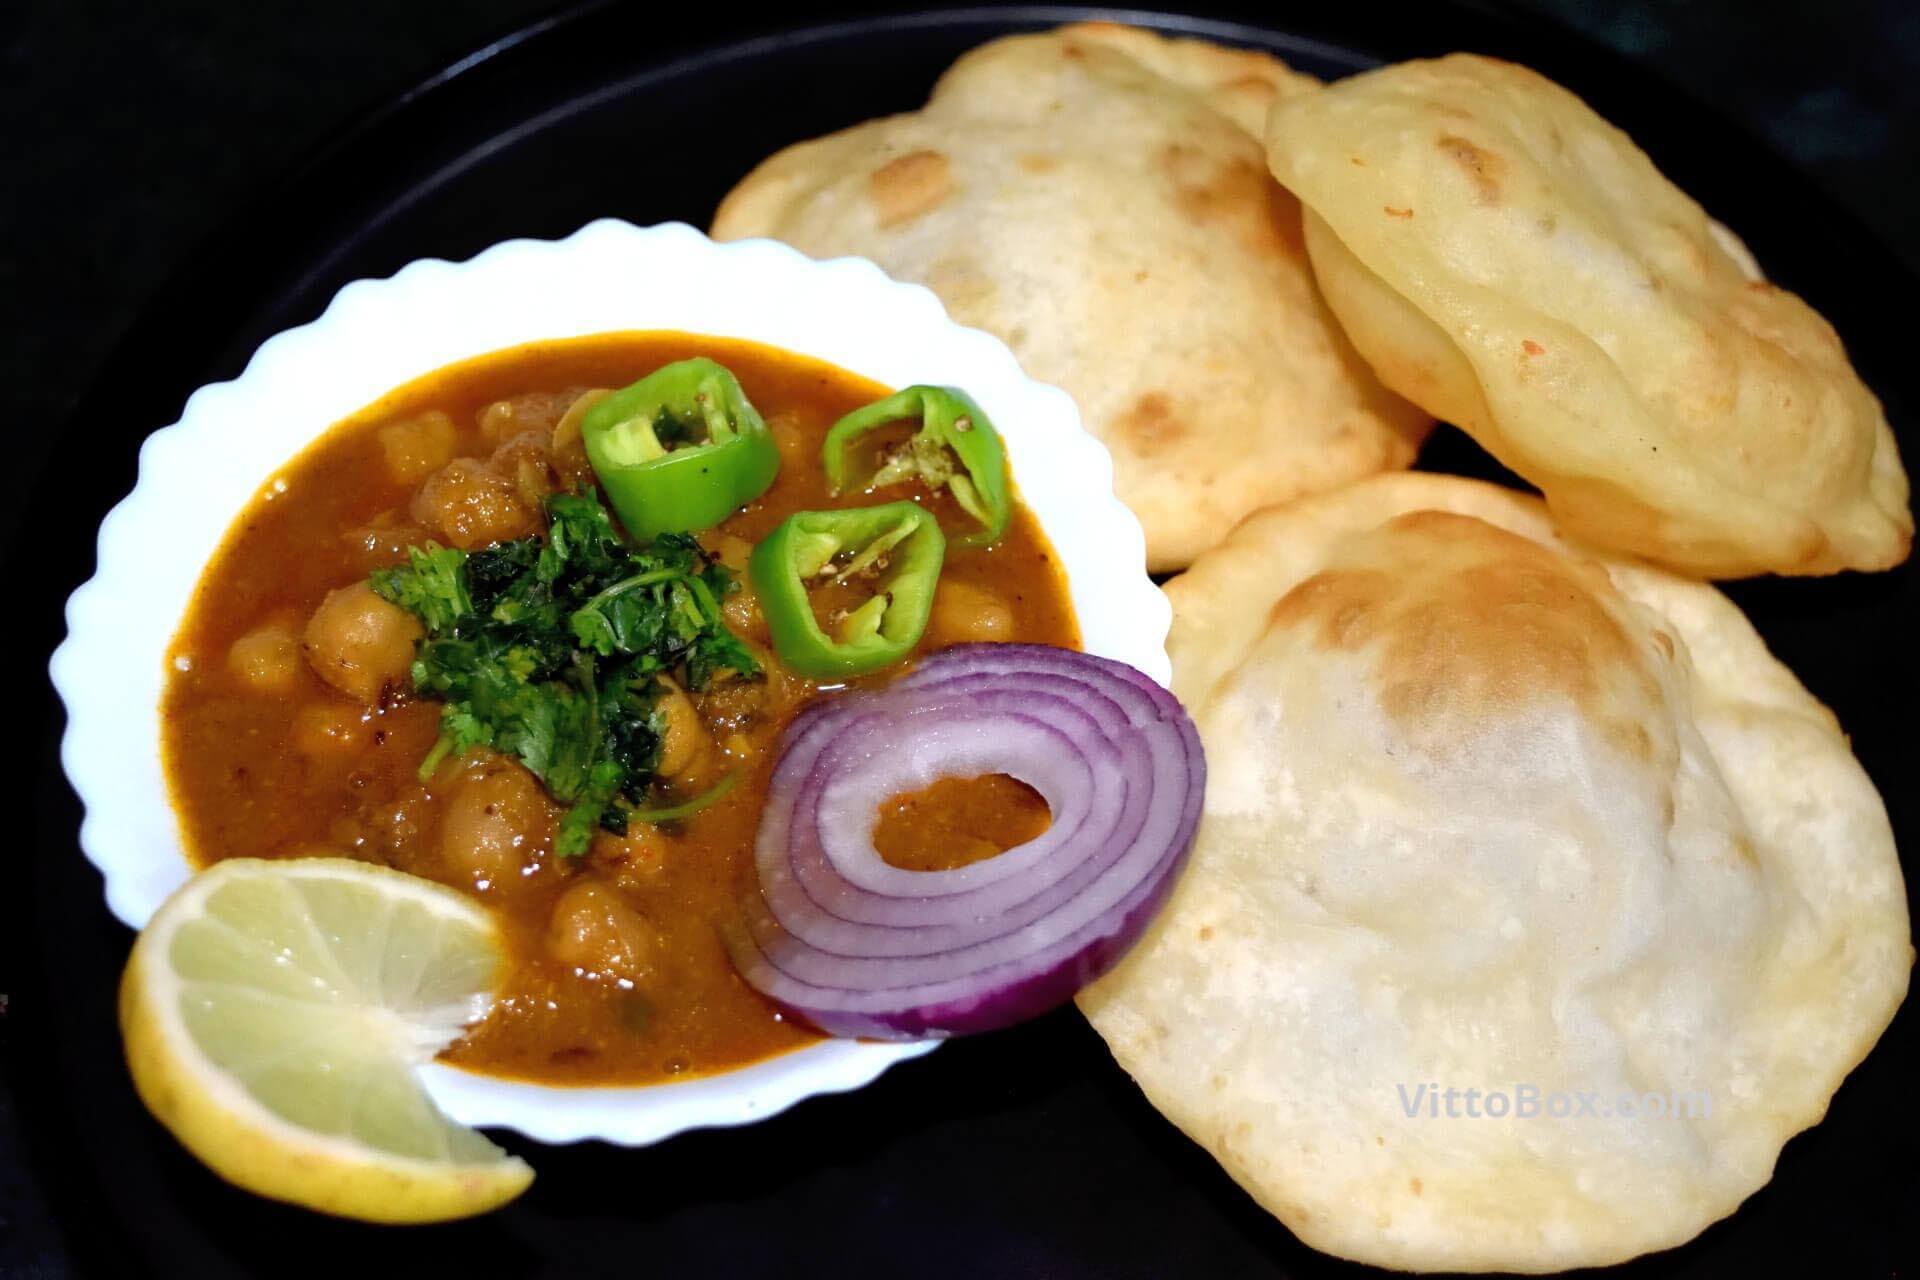 Punjabi Chole Bhature Recipe